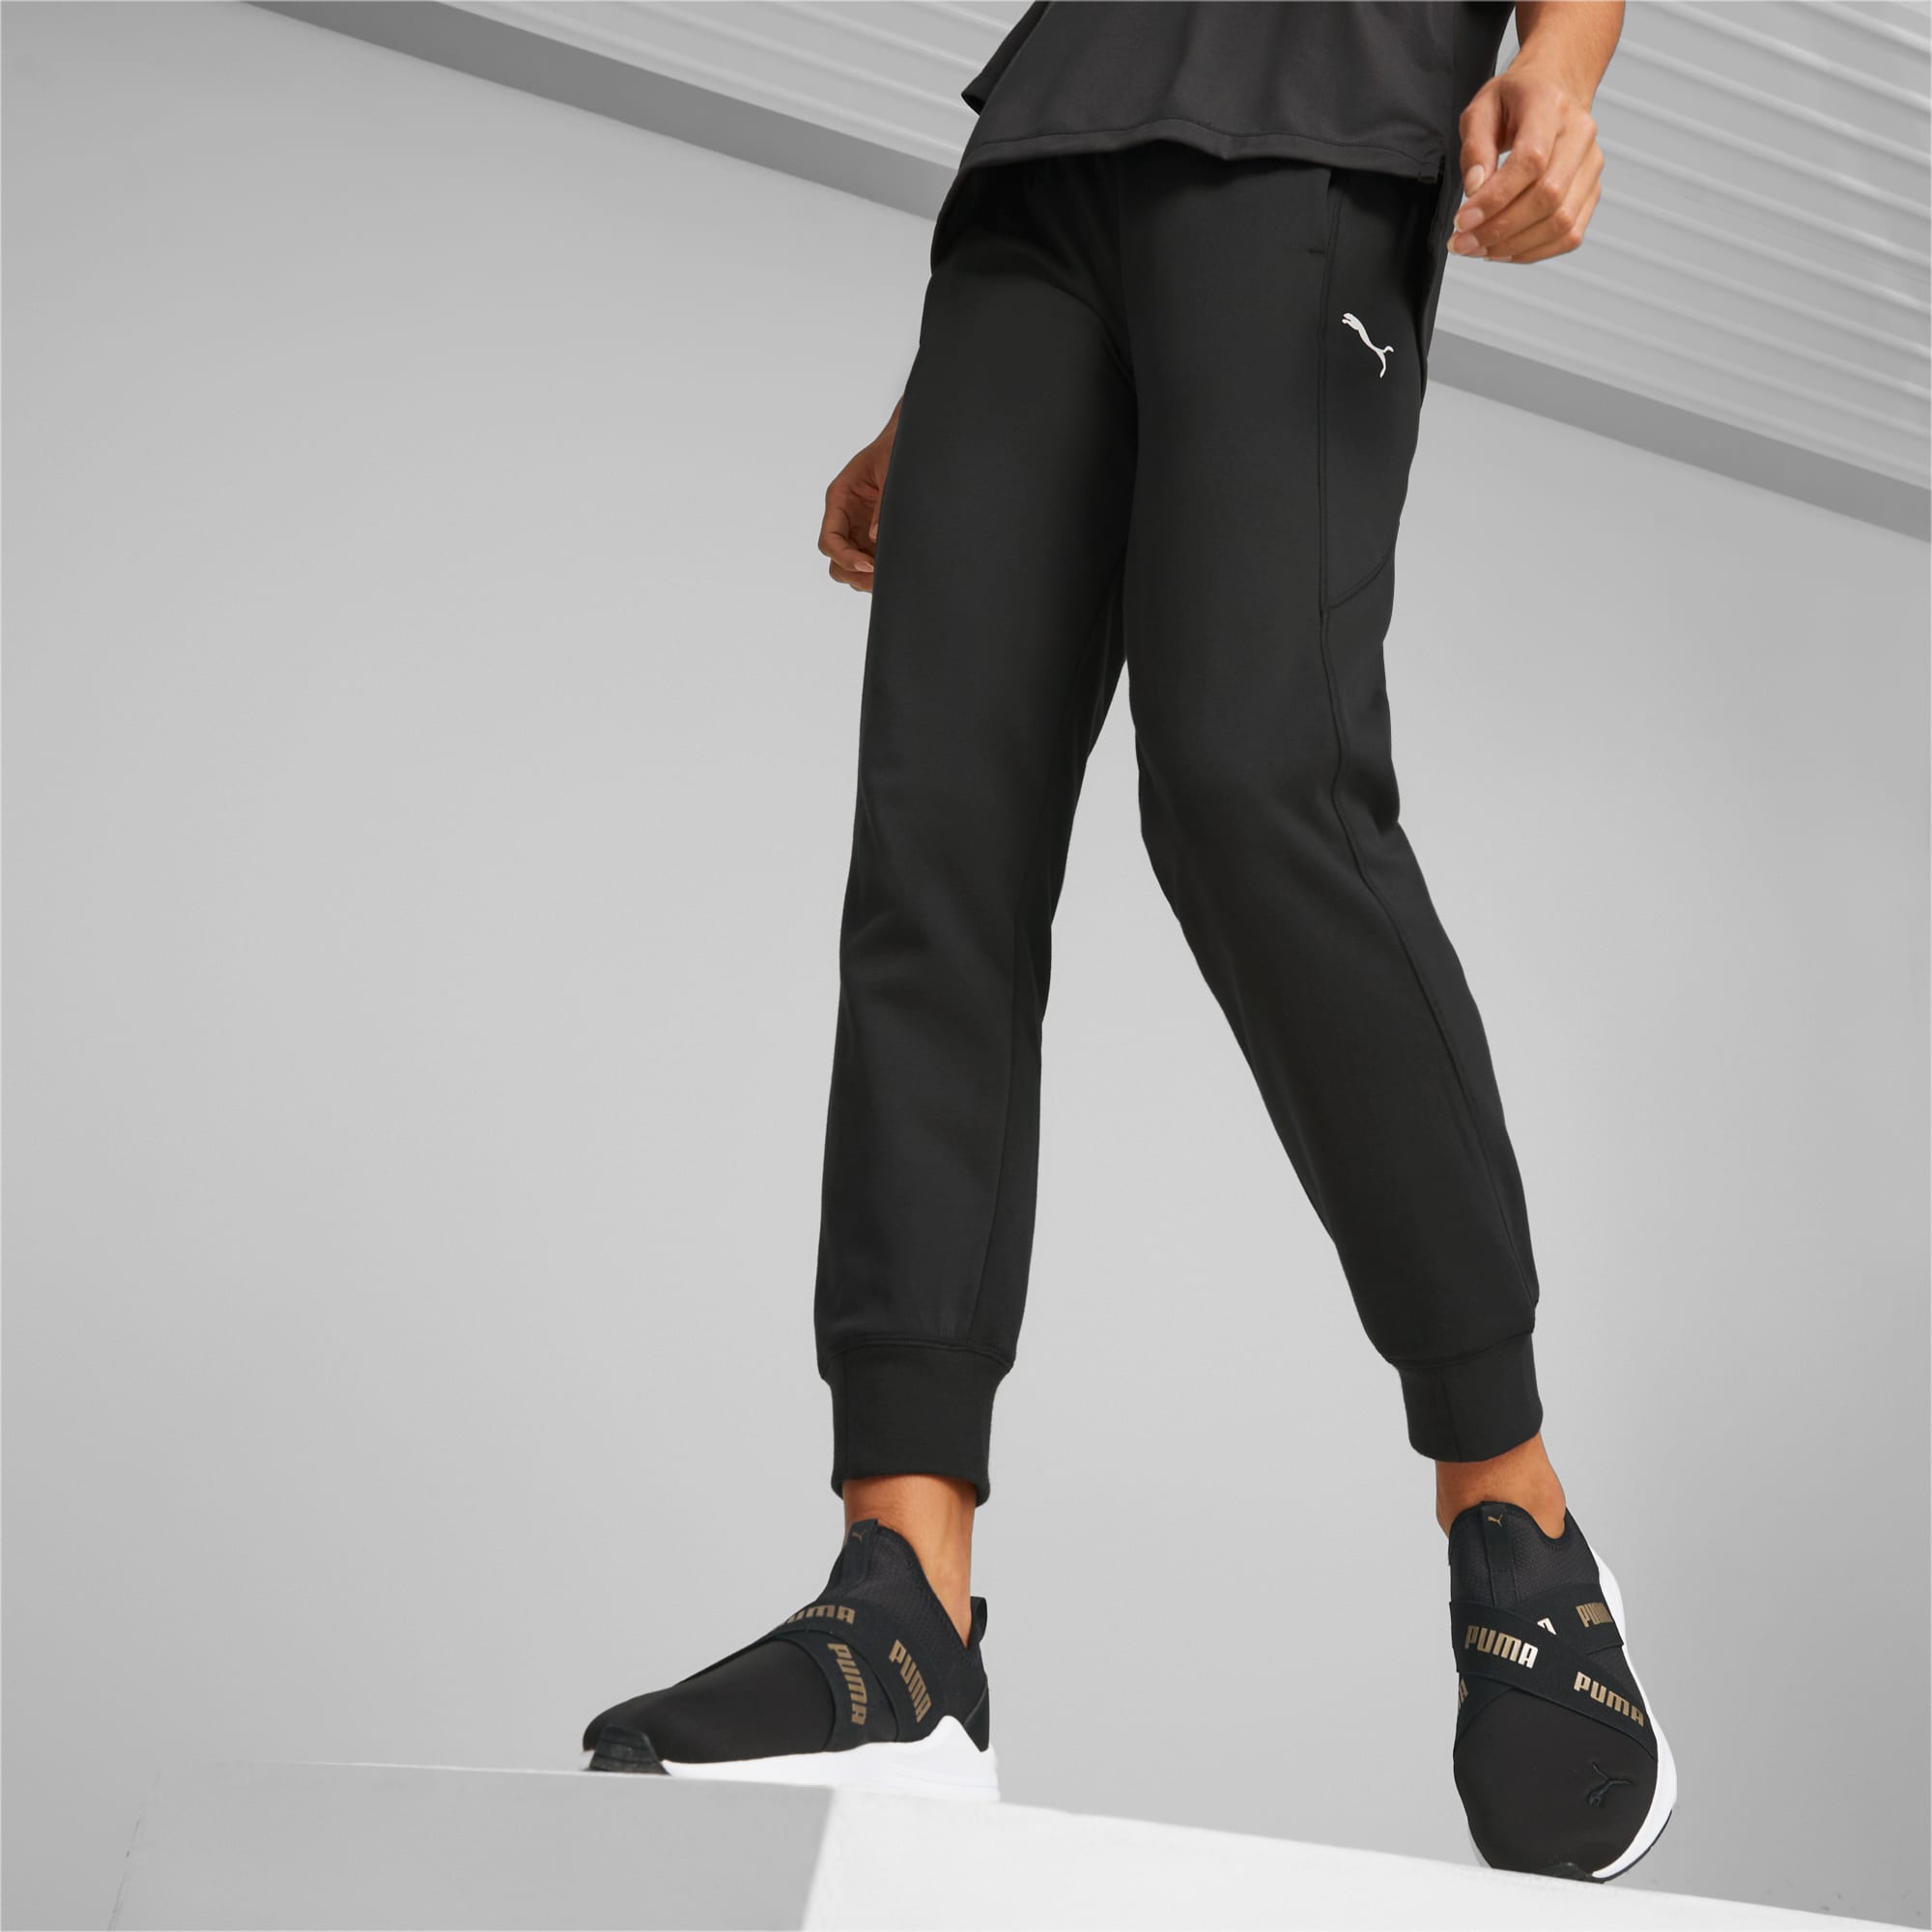 Modern Sports Pants Women | PUMA Sustainable Fashion | PUMA